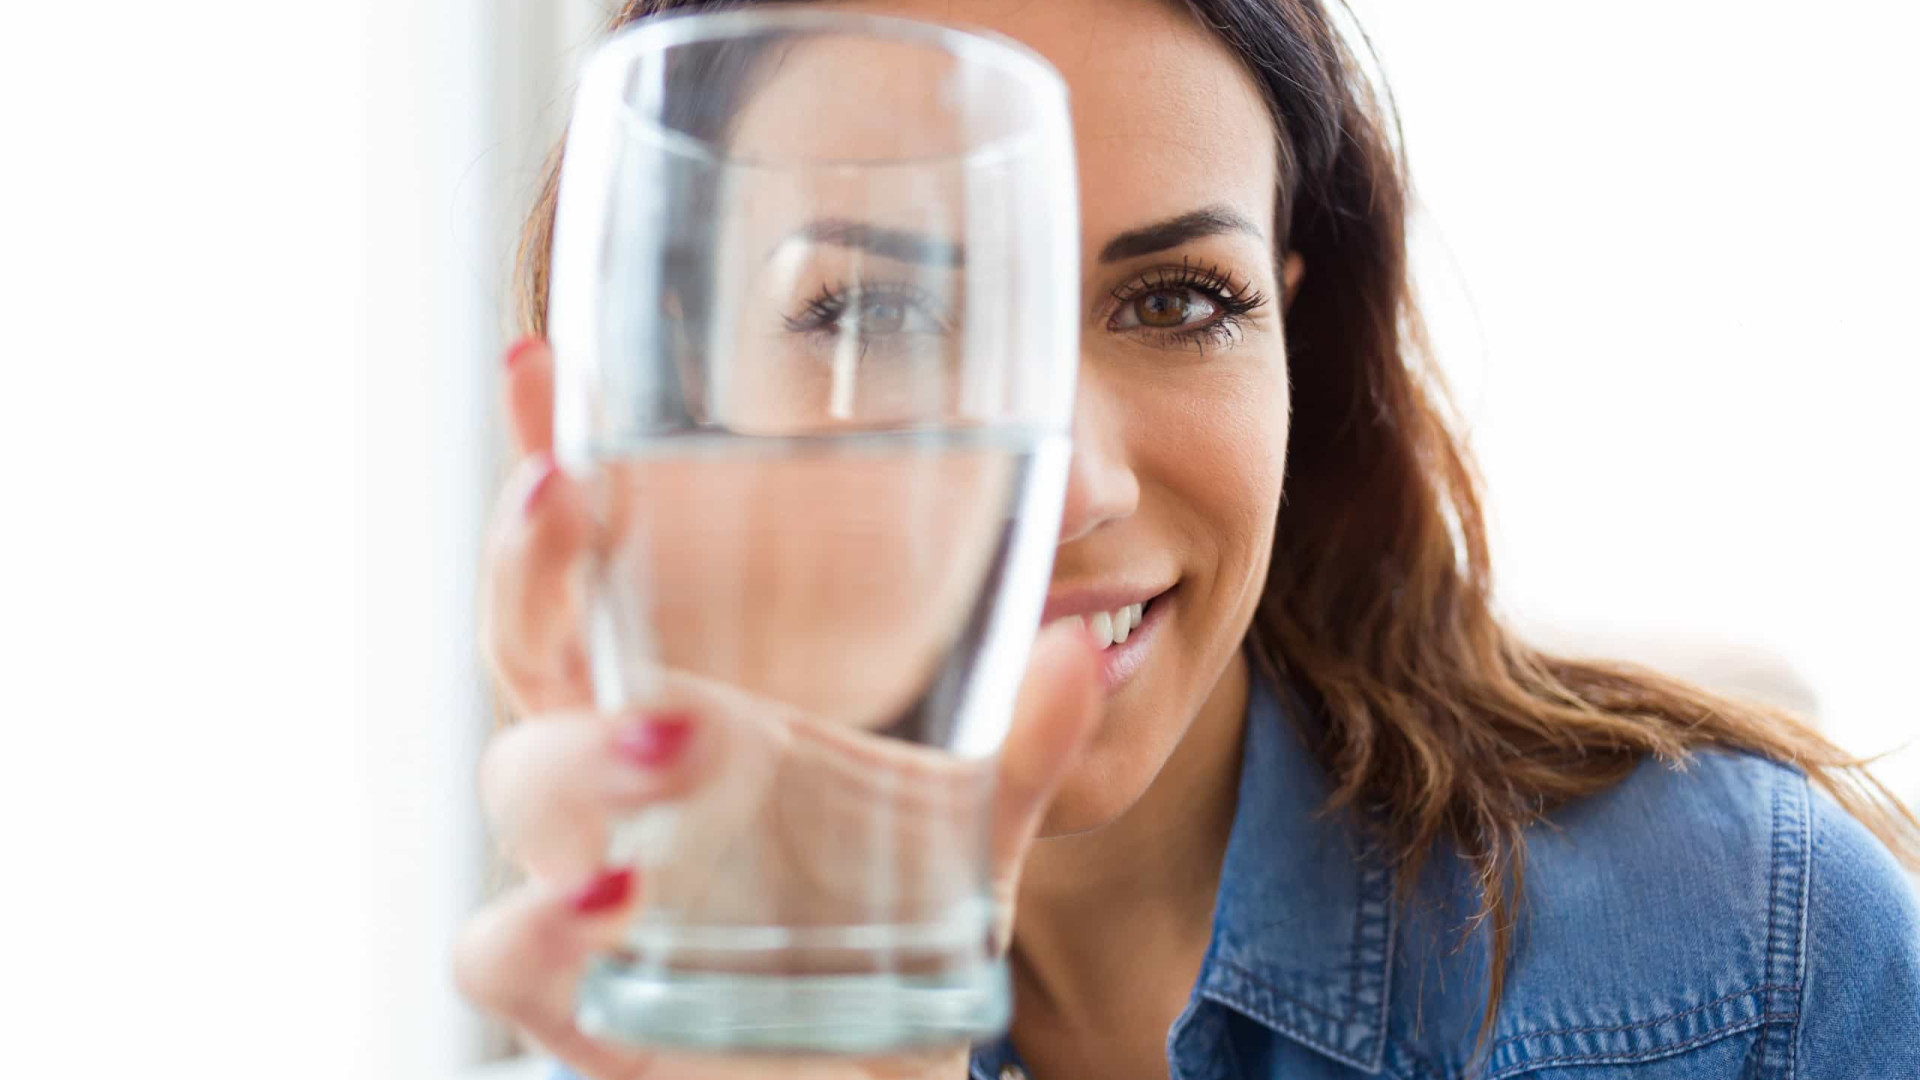 Beber pouca água faz mal à saúde, mas muita também. Quando é demais?